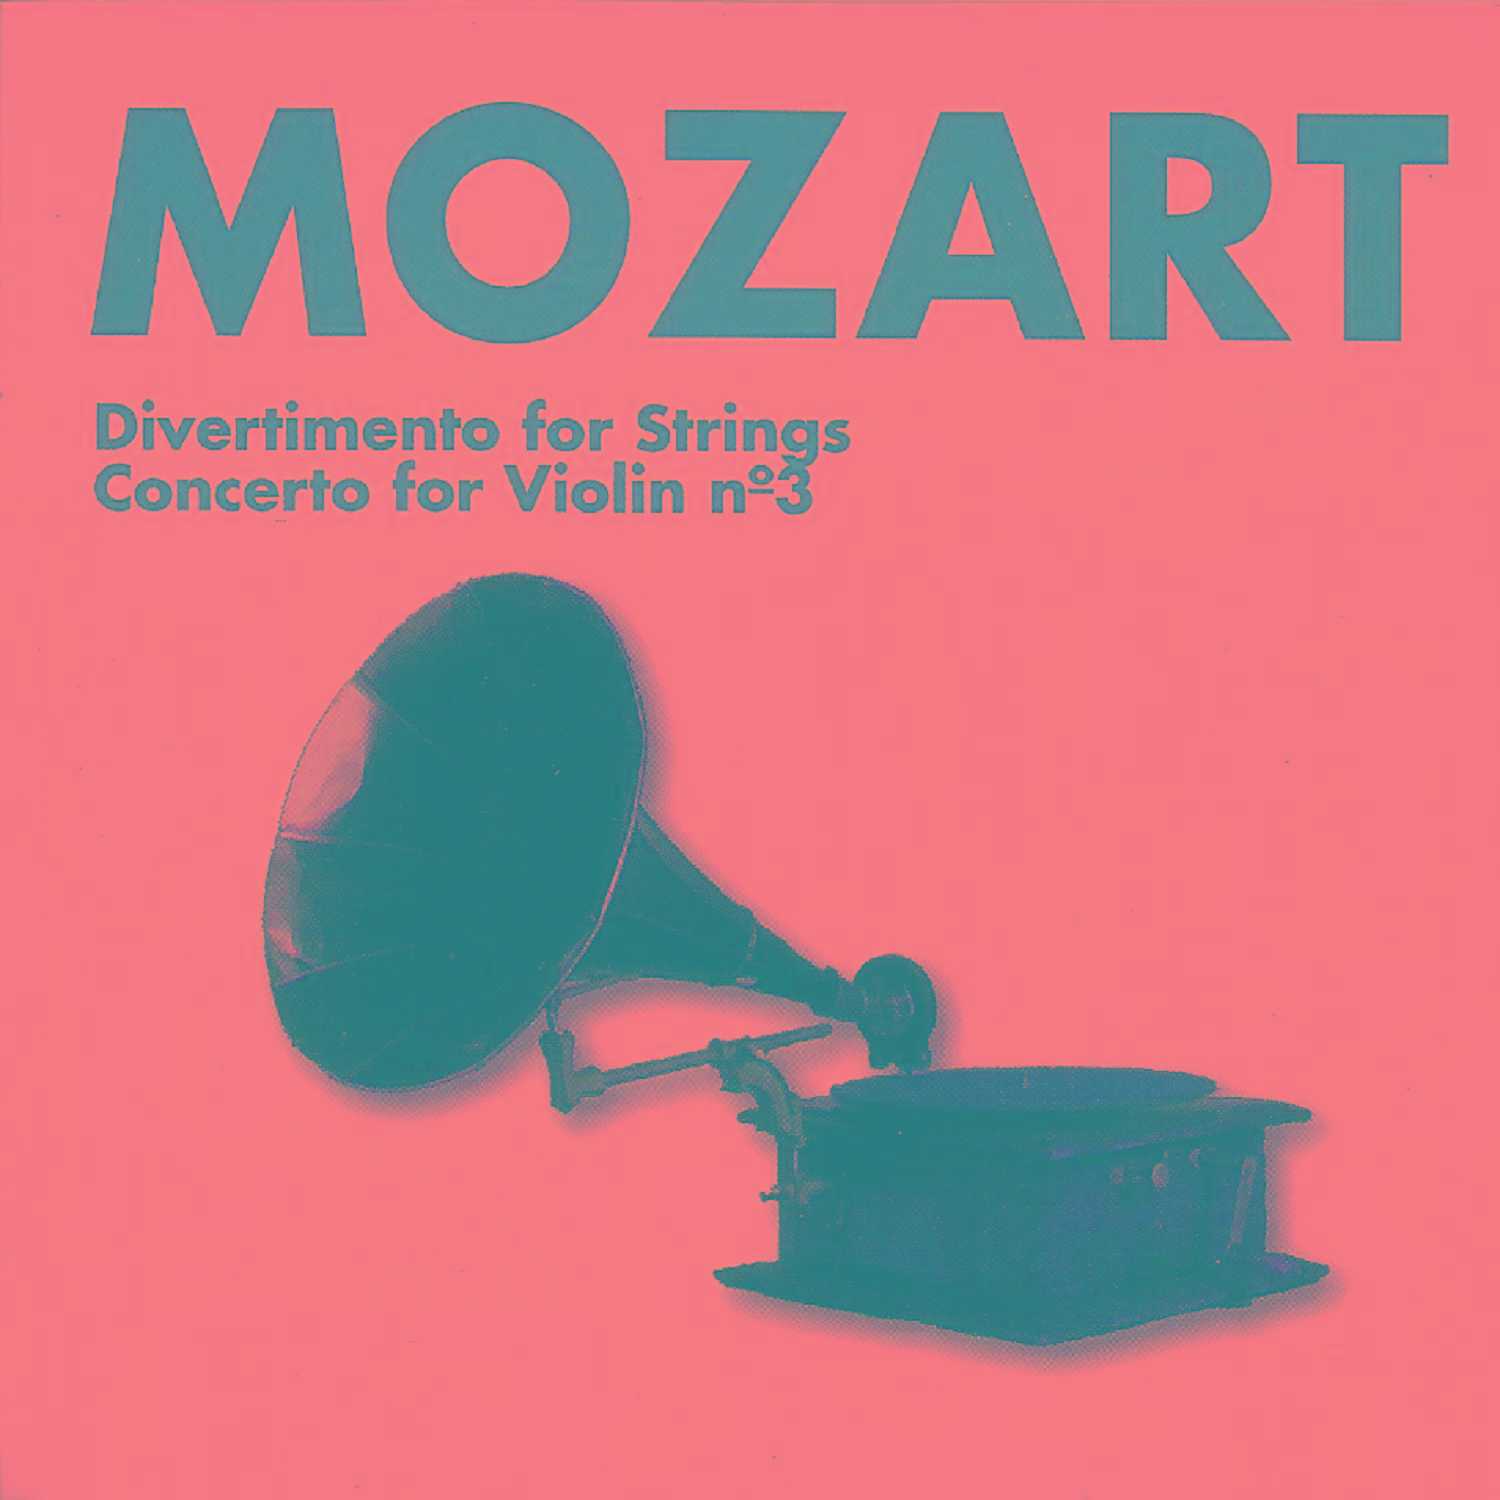 Violin Concerto No. 3 in G Major, K. 216: I. Allegro